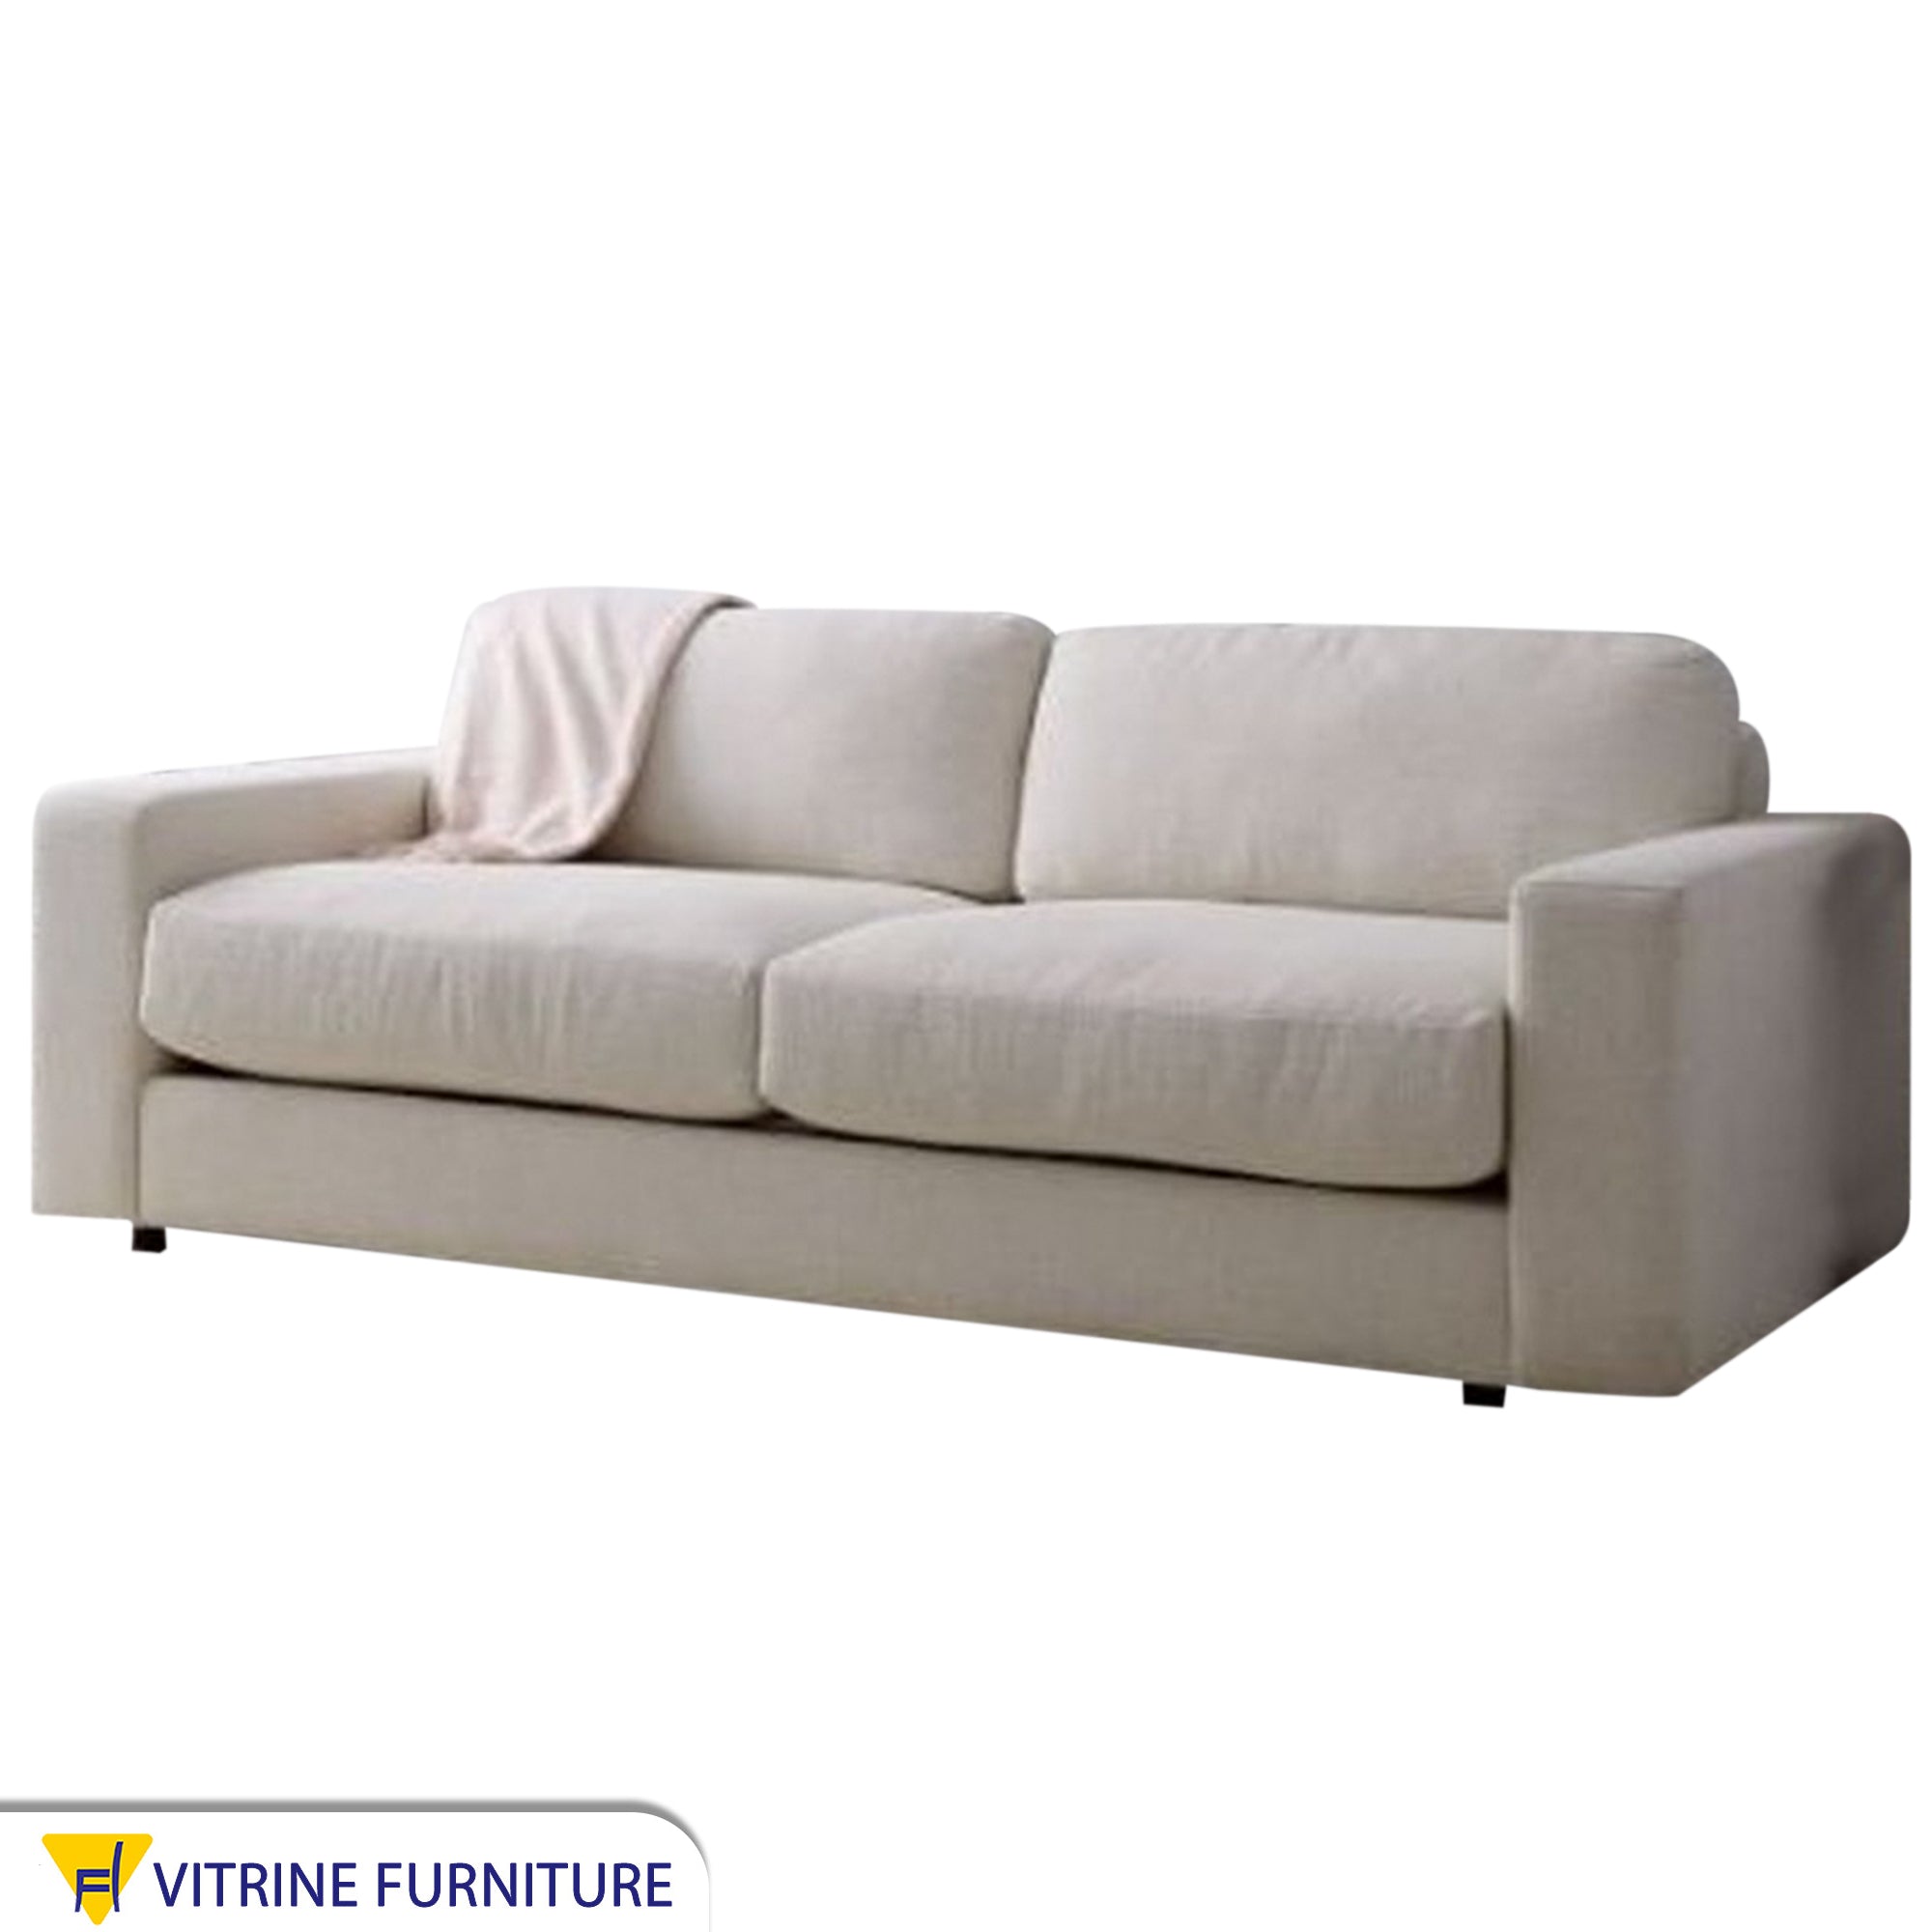 Triple sofa in off-white color